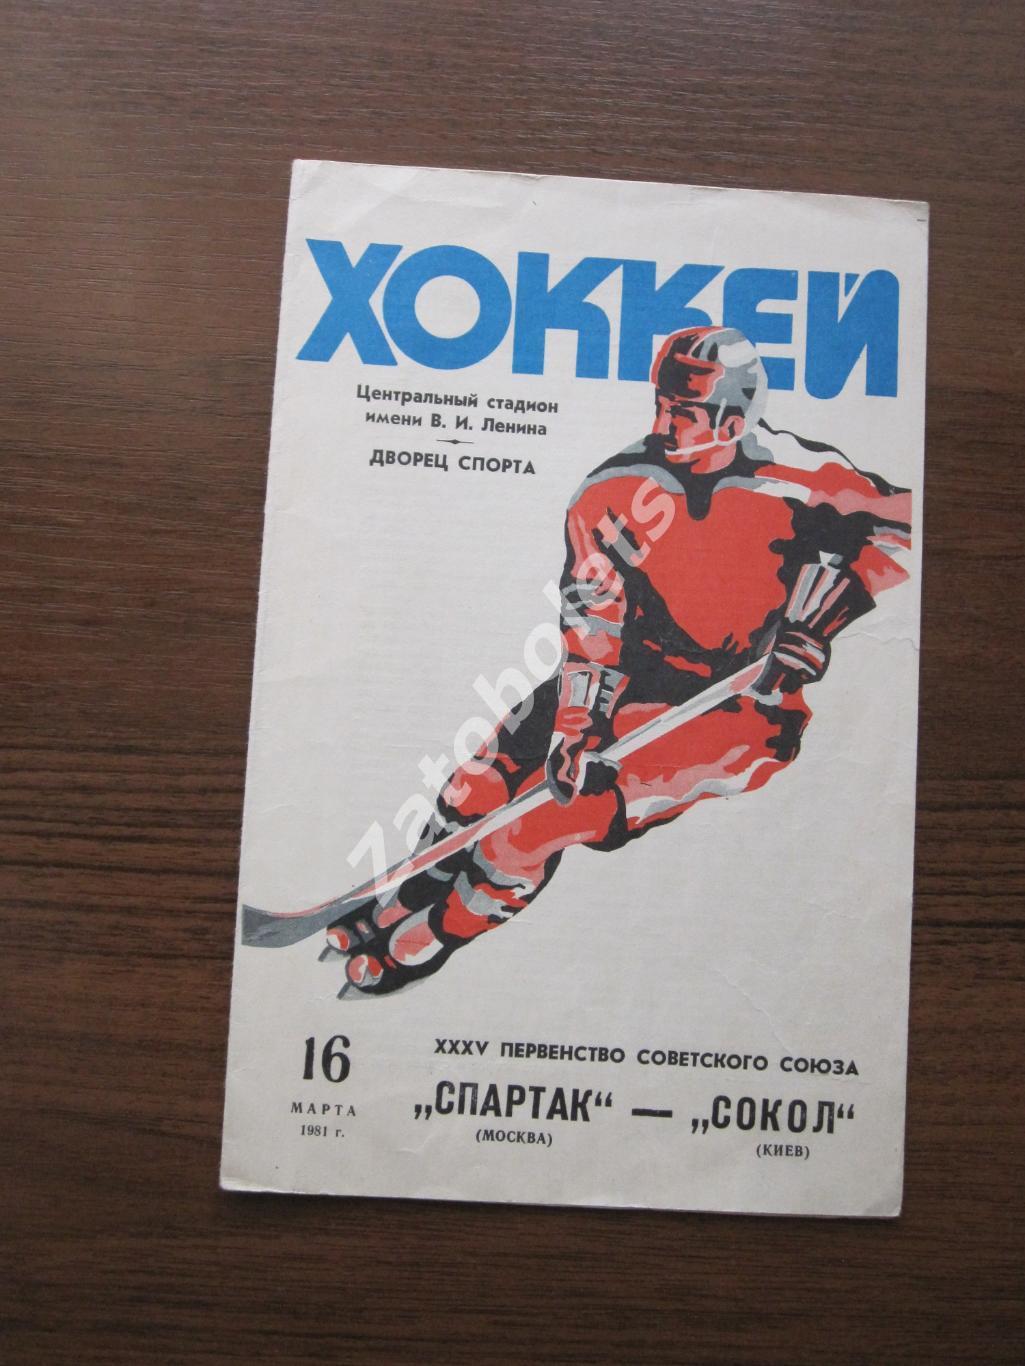 Спартак Москва - Сокол Киев 16.03.1981